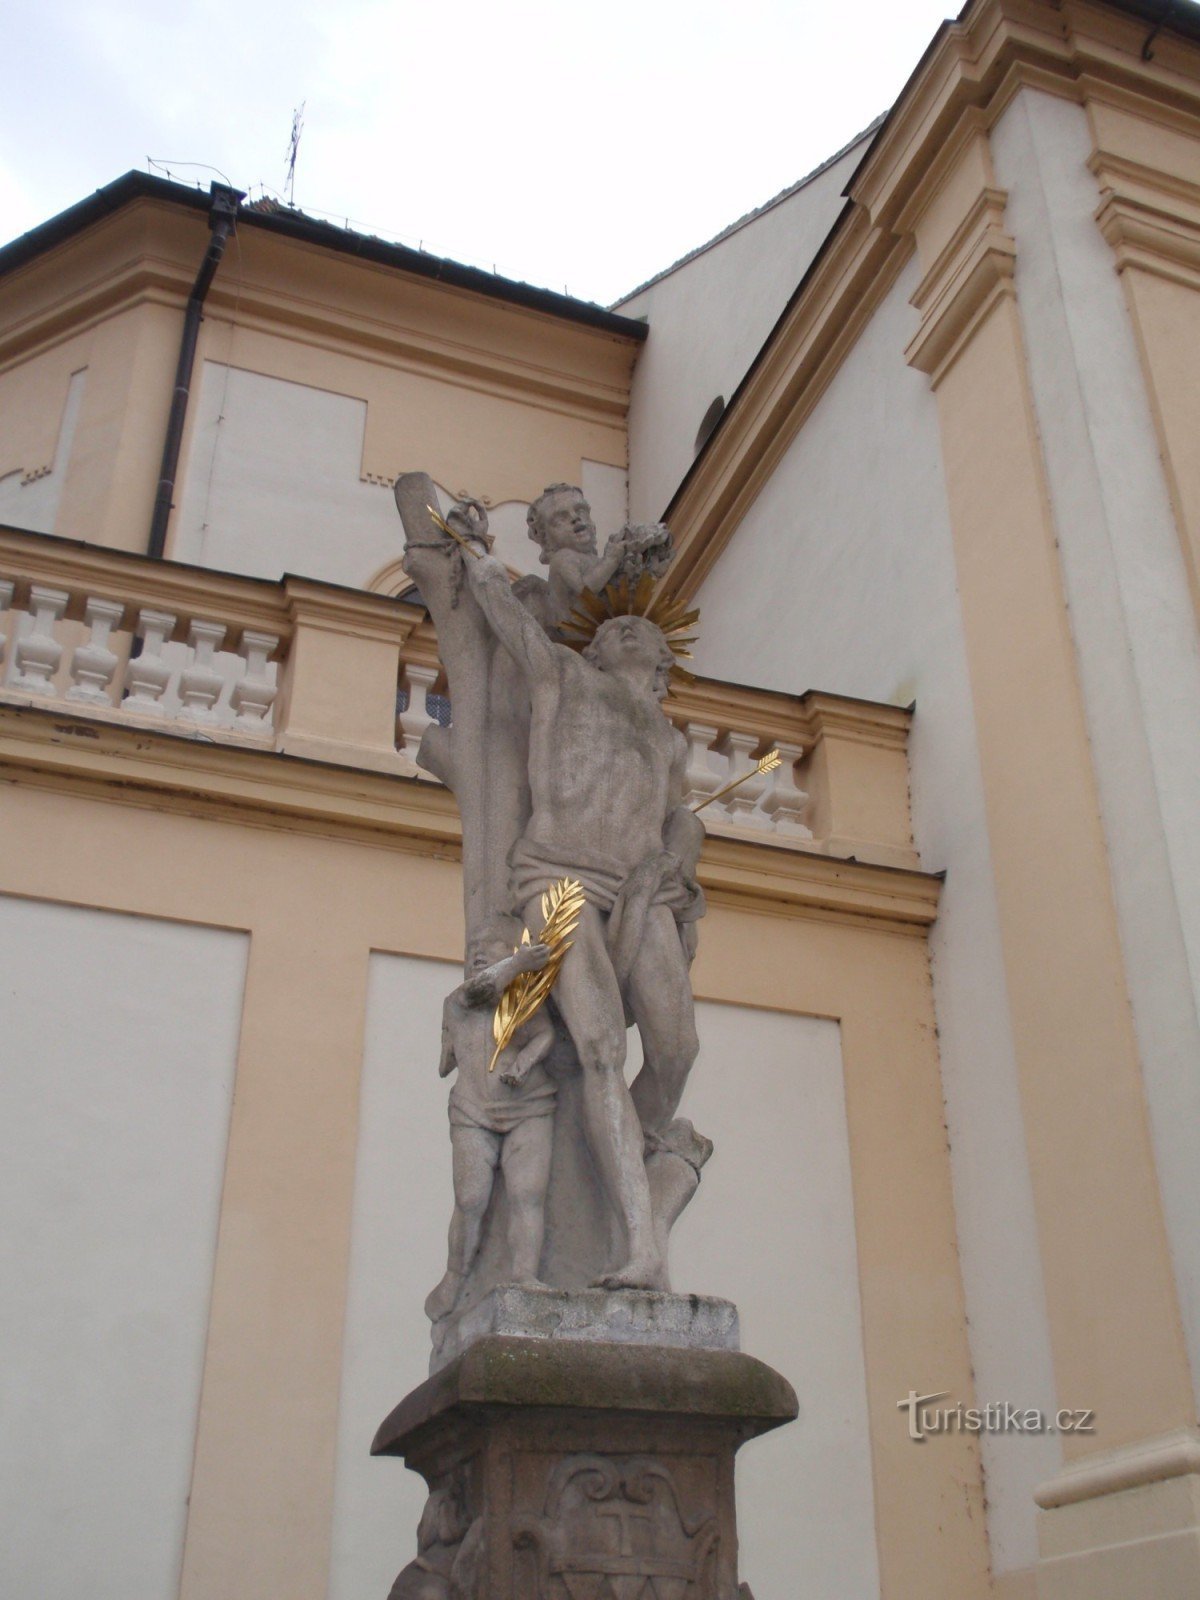 Estátua de S. Sebestián em Třebíč